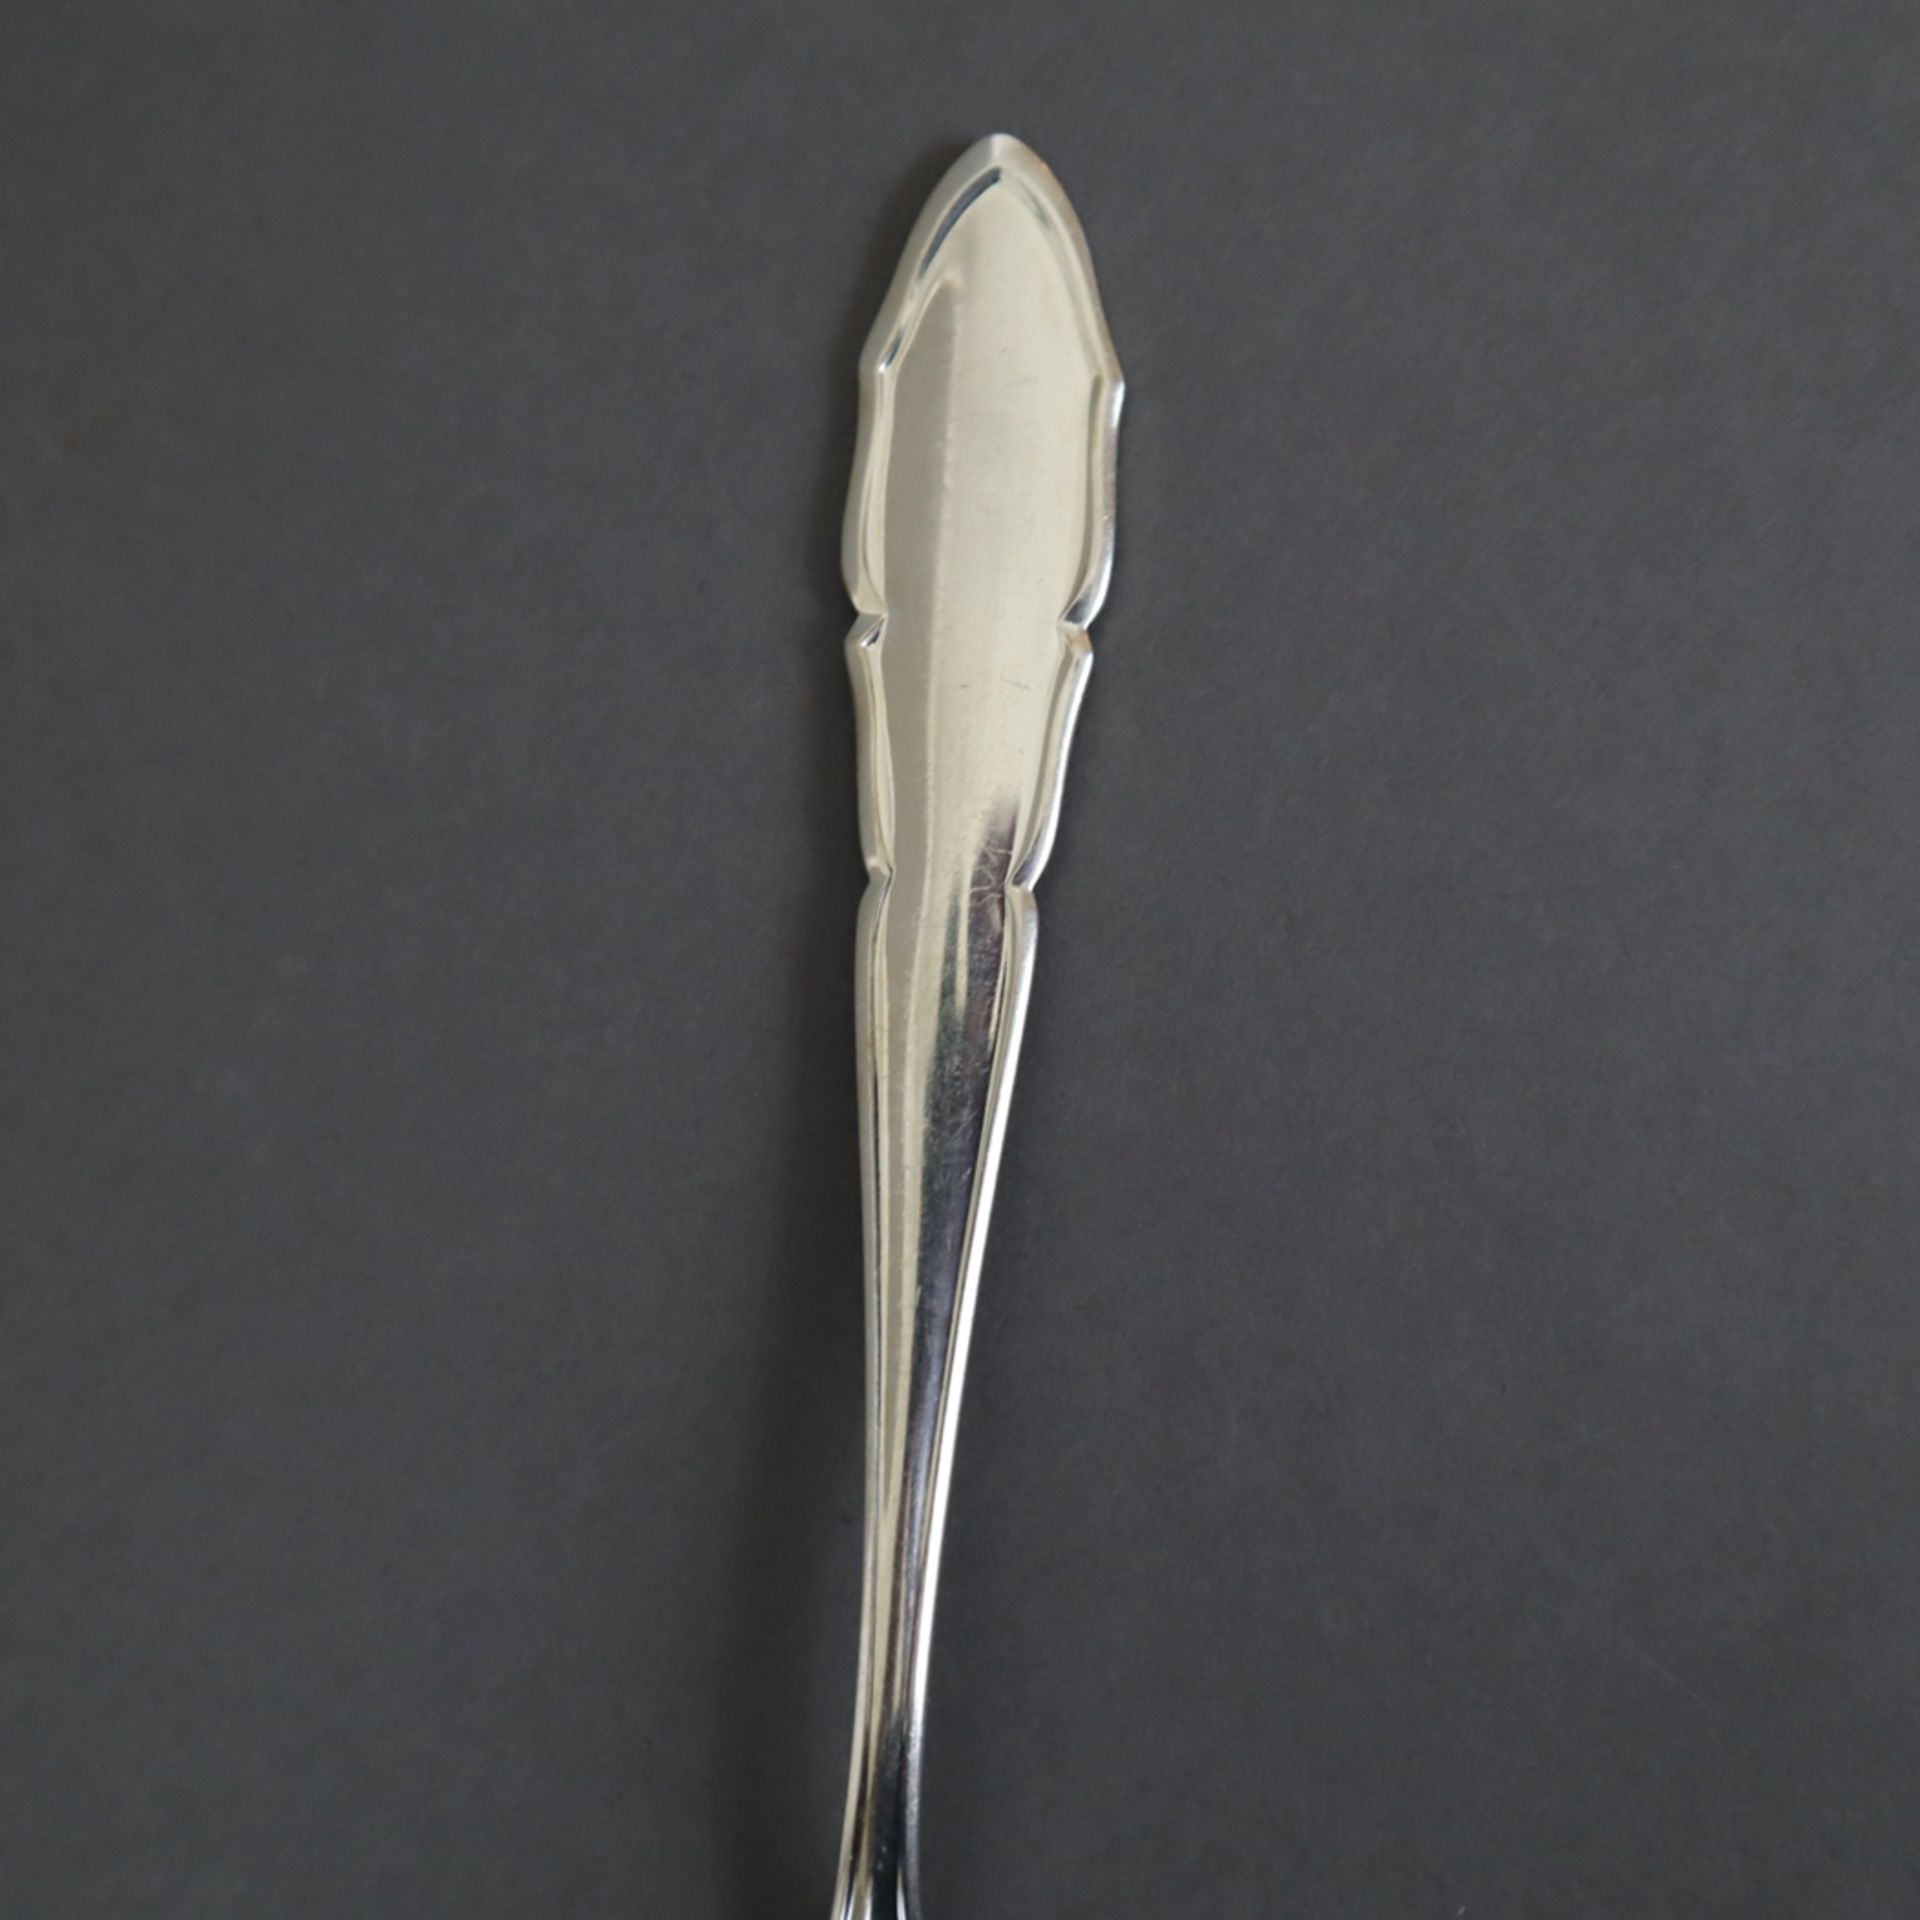 Zwölf Speisegabeln - Silber 800/000, geschweifte Griffe, Punzierung: Halbmond, Krone, 800, Auerhahn - Bild 3 aus 4